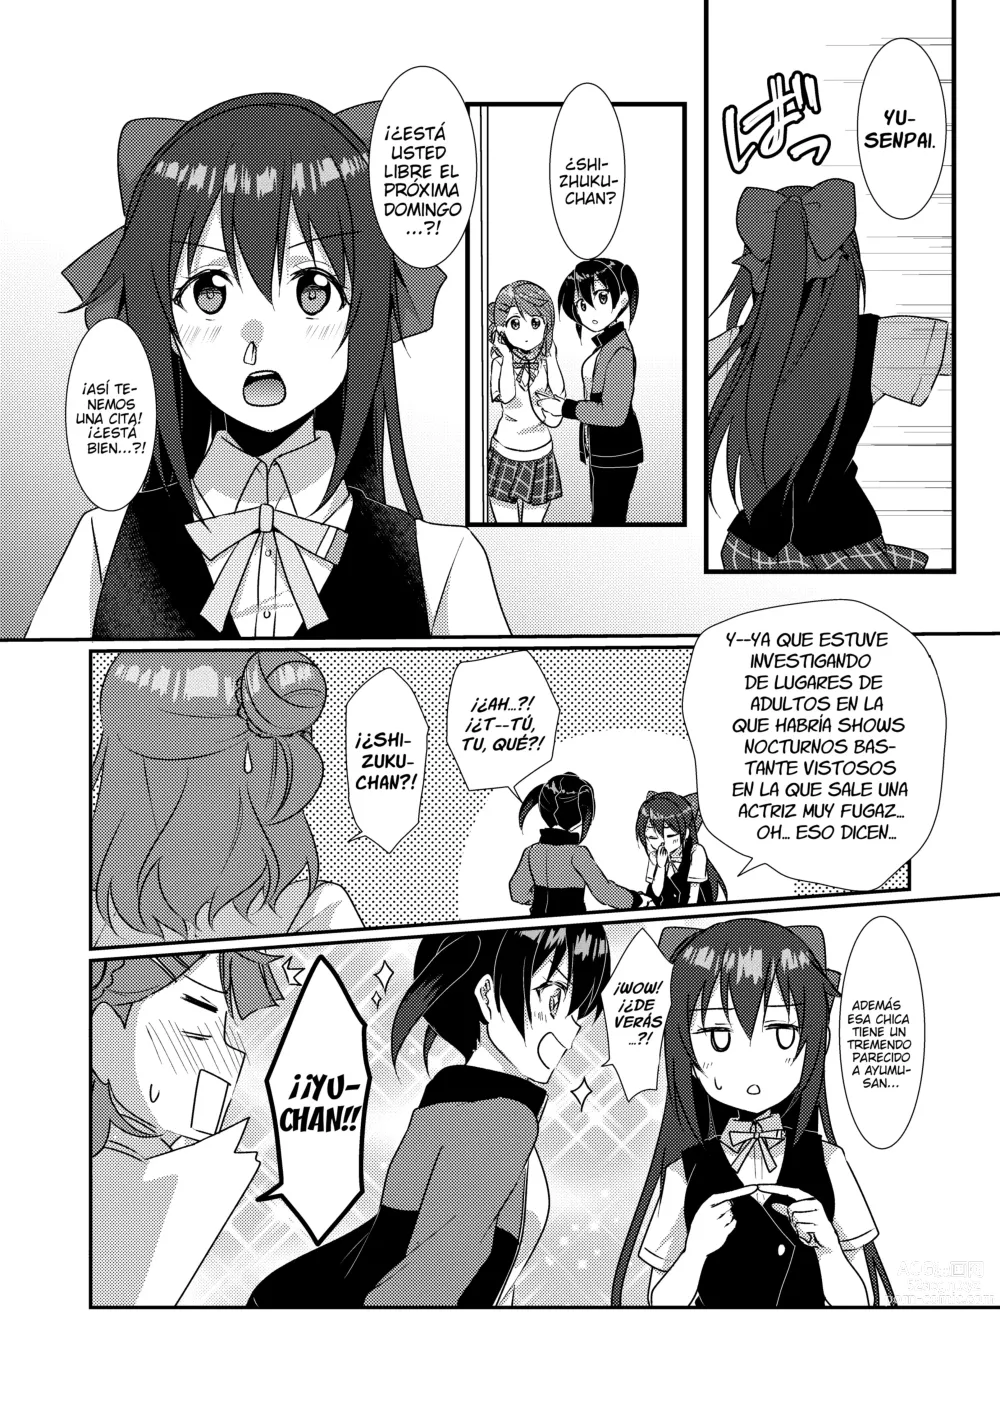 Page 7 of doujinshi Relato Yuristico: SAKURA